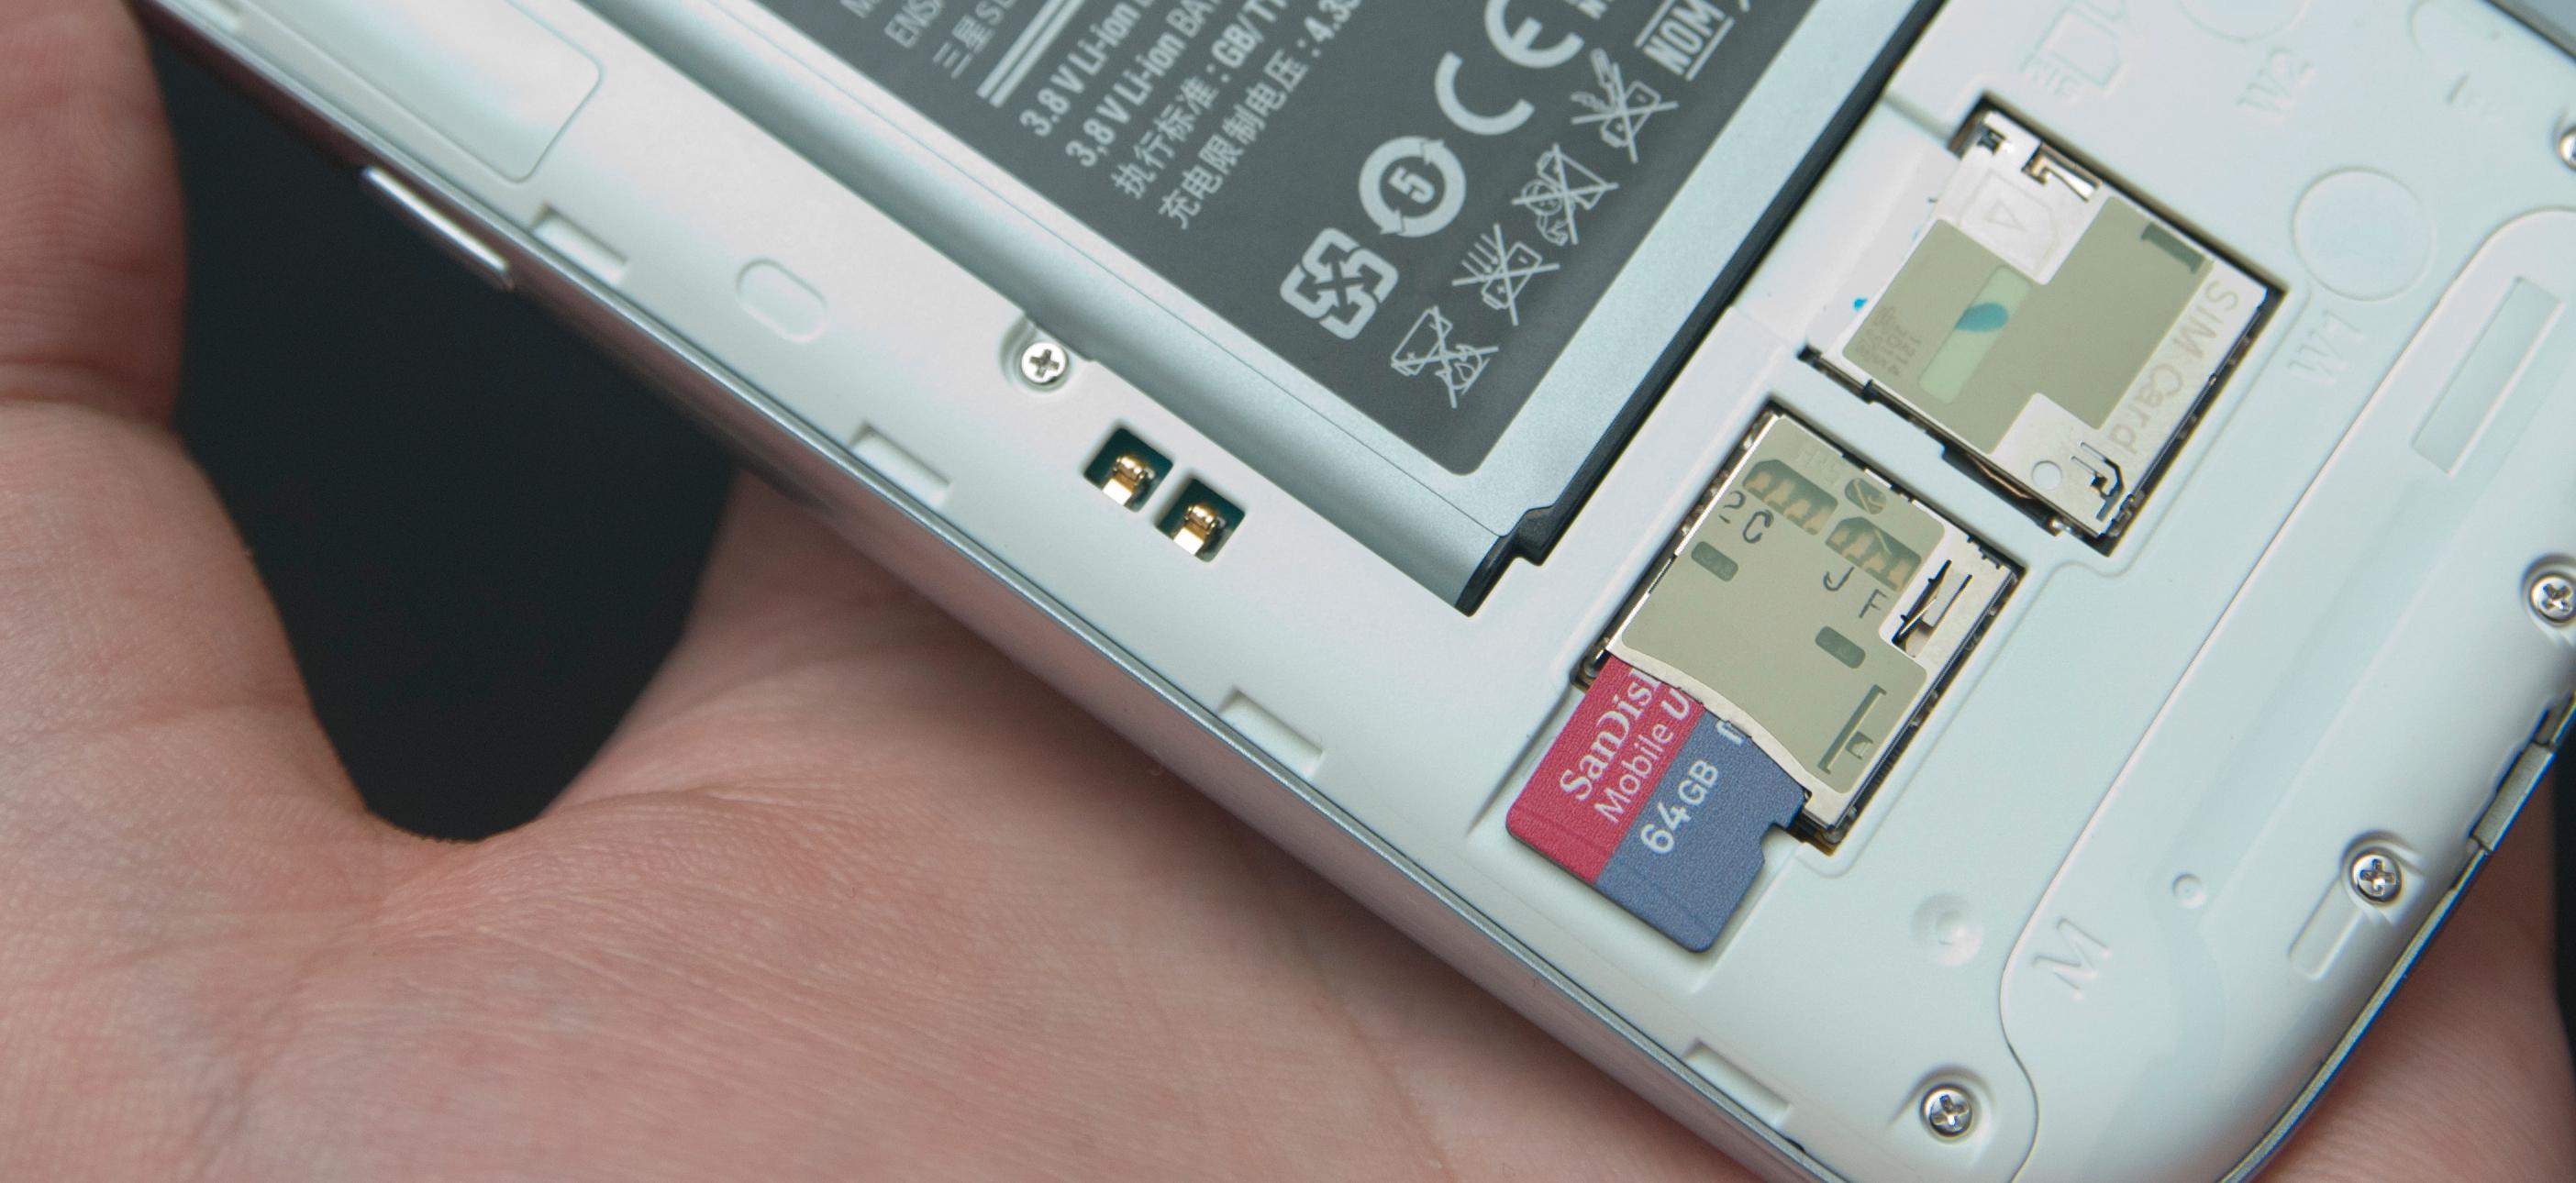 Galaxy S III støtter så godt som alt av nye mobilteknologier, inkludert de største minnekortene du får tak i.